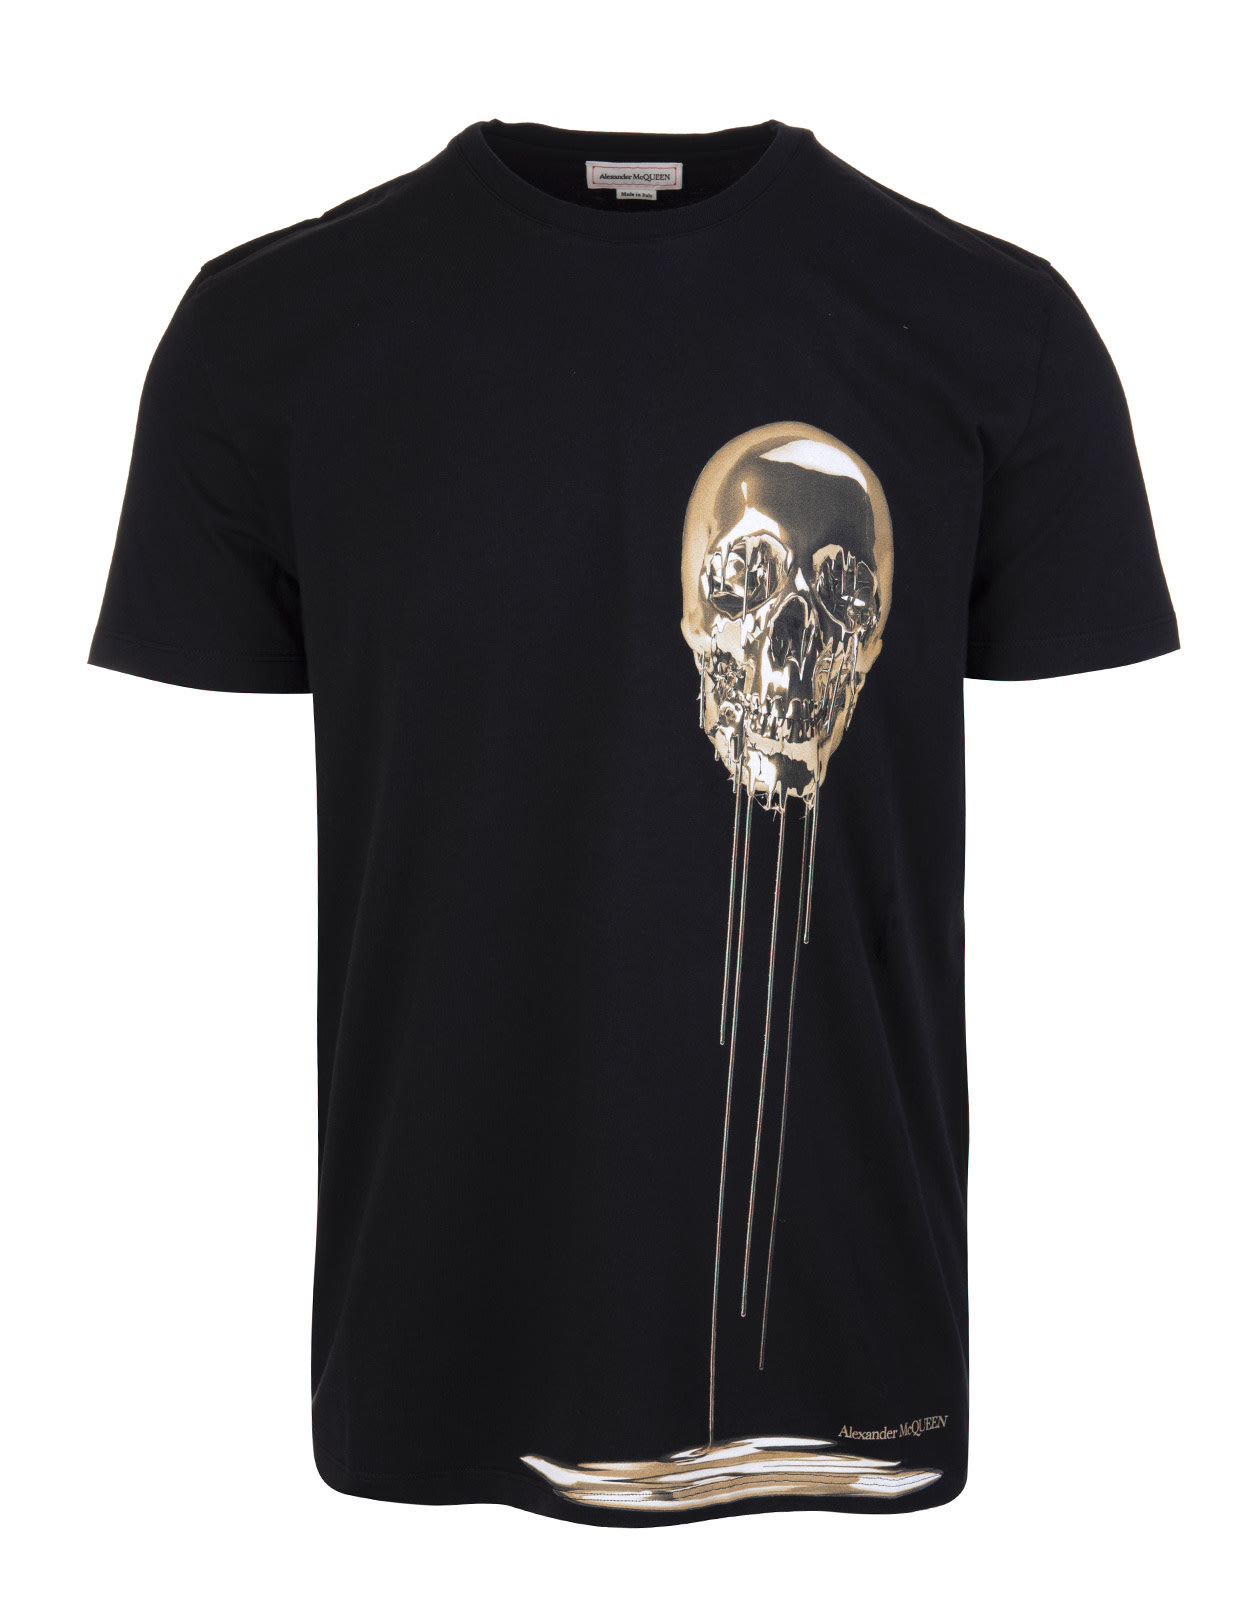 Alexander McQueen Man Black Liquid Skull T-shirt